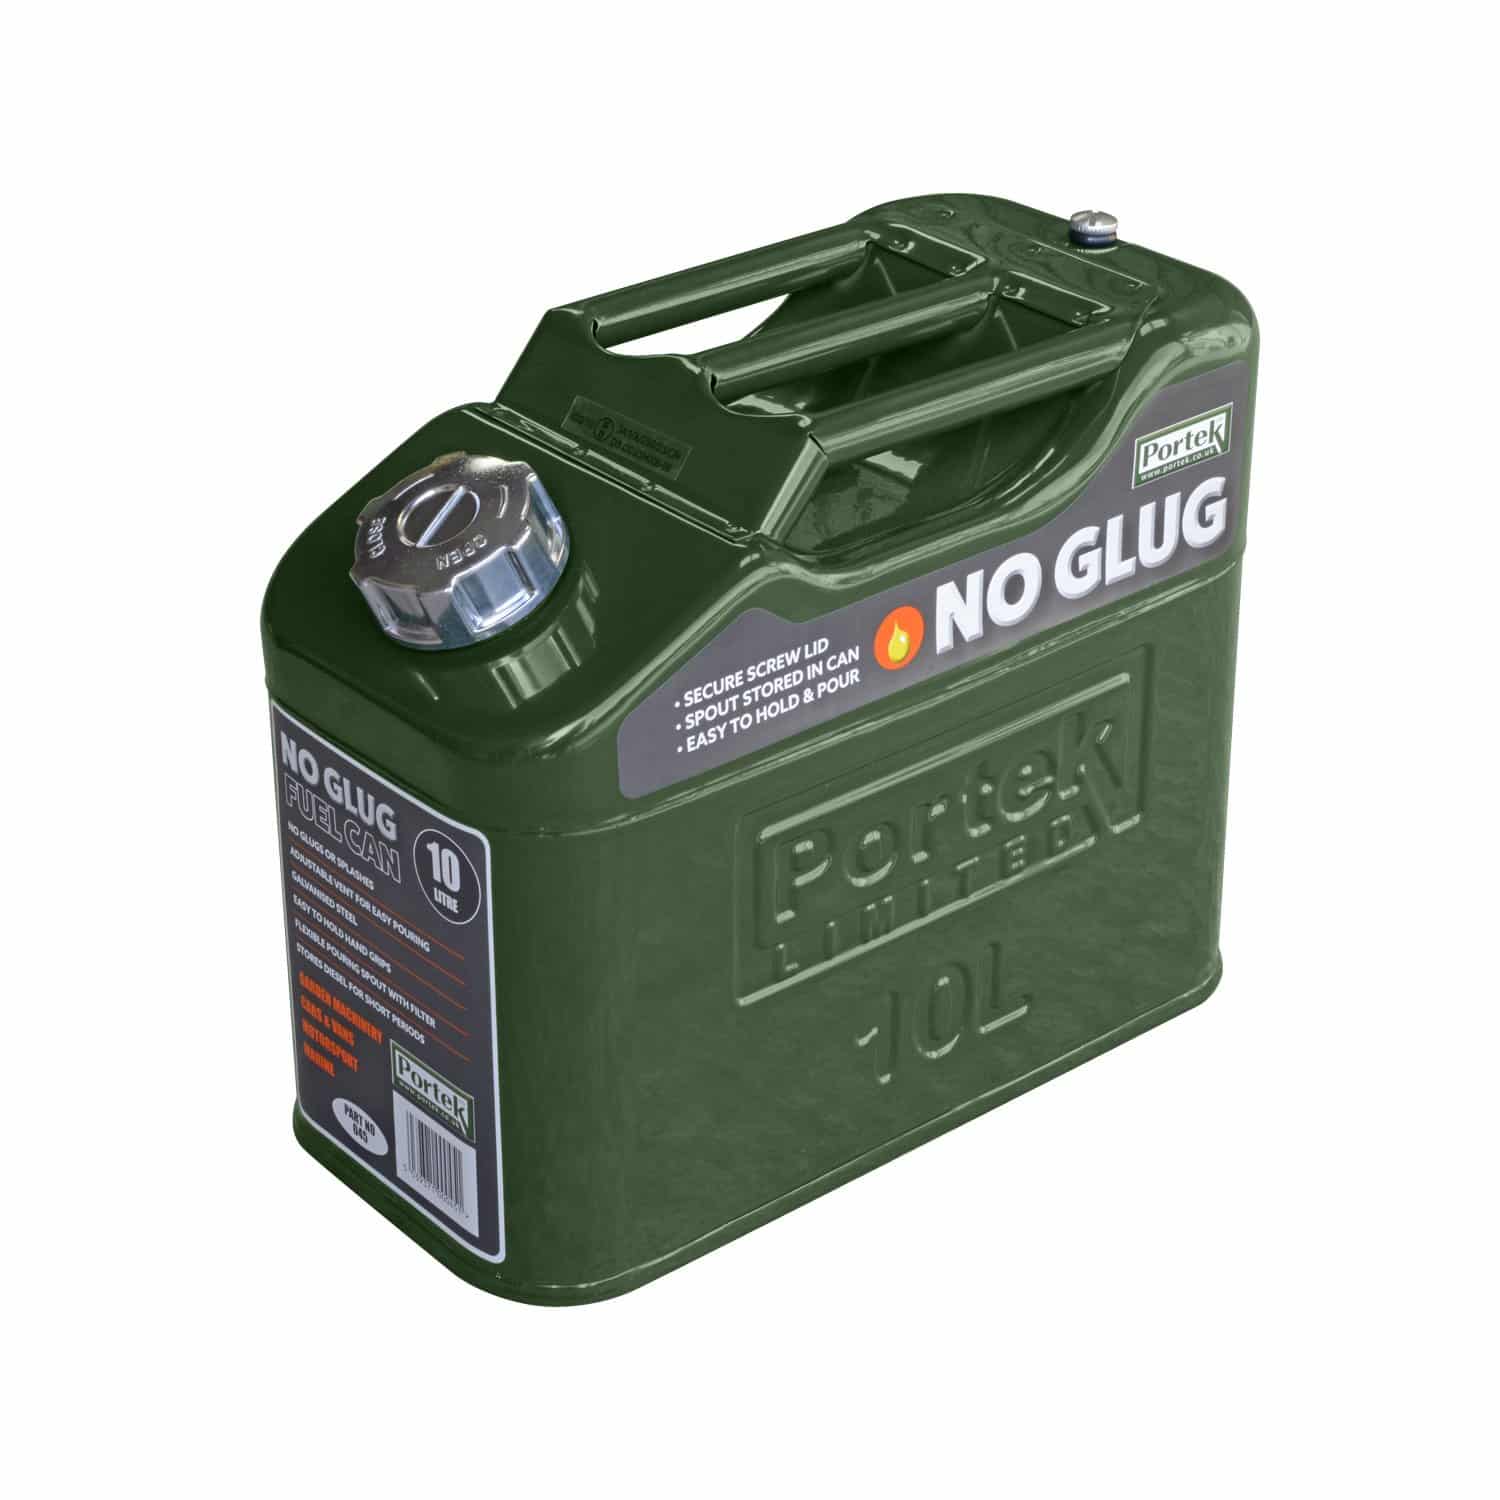 Portek No-Glug-10L-Fuel Can